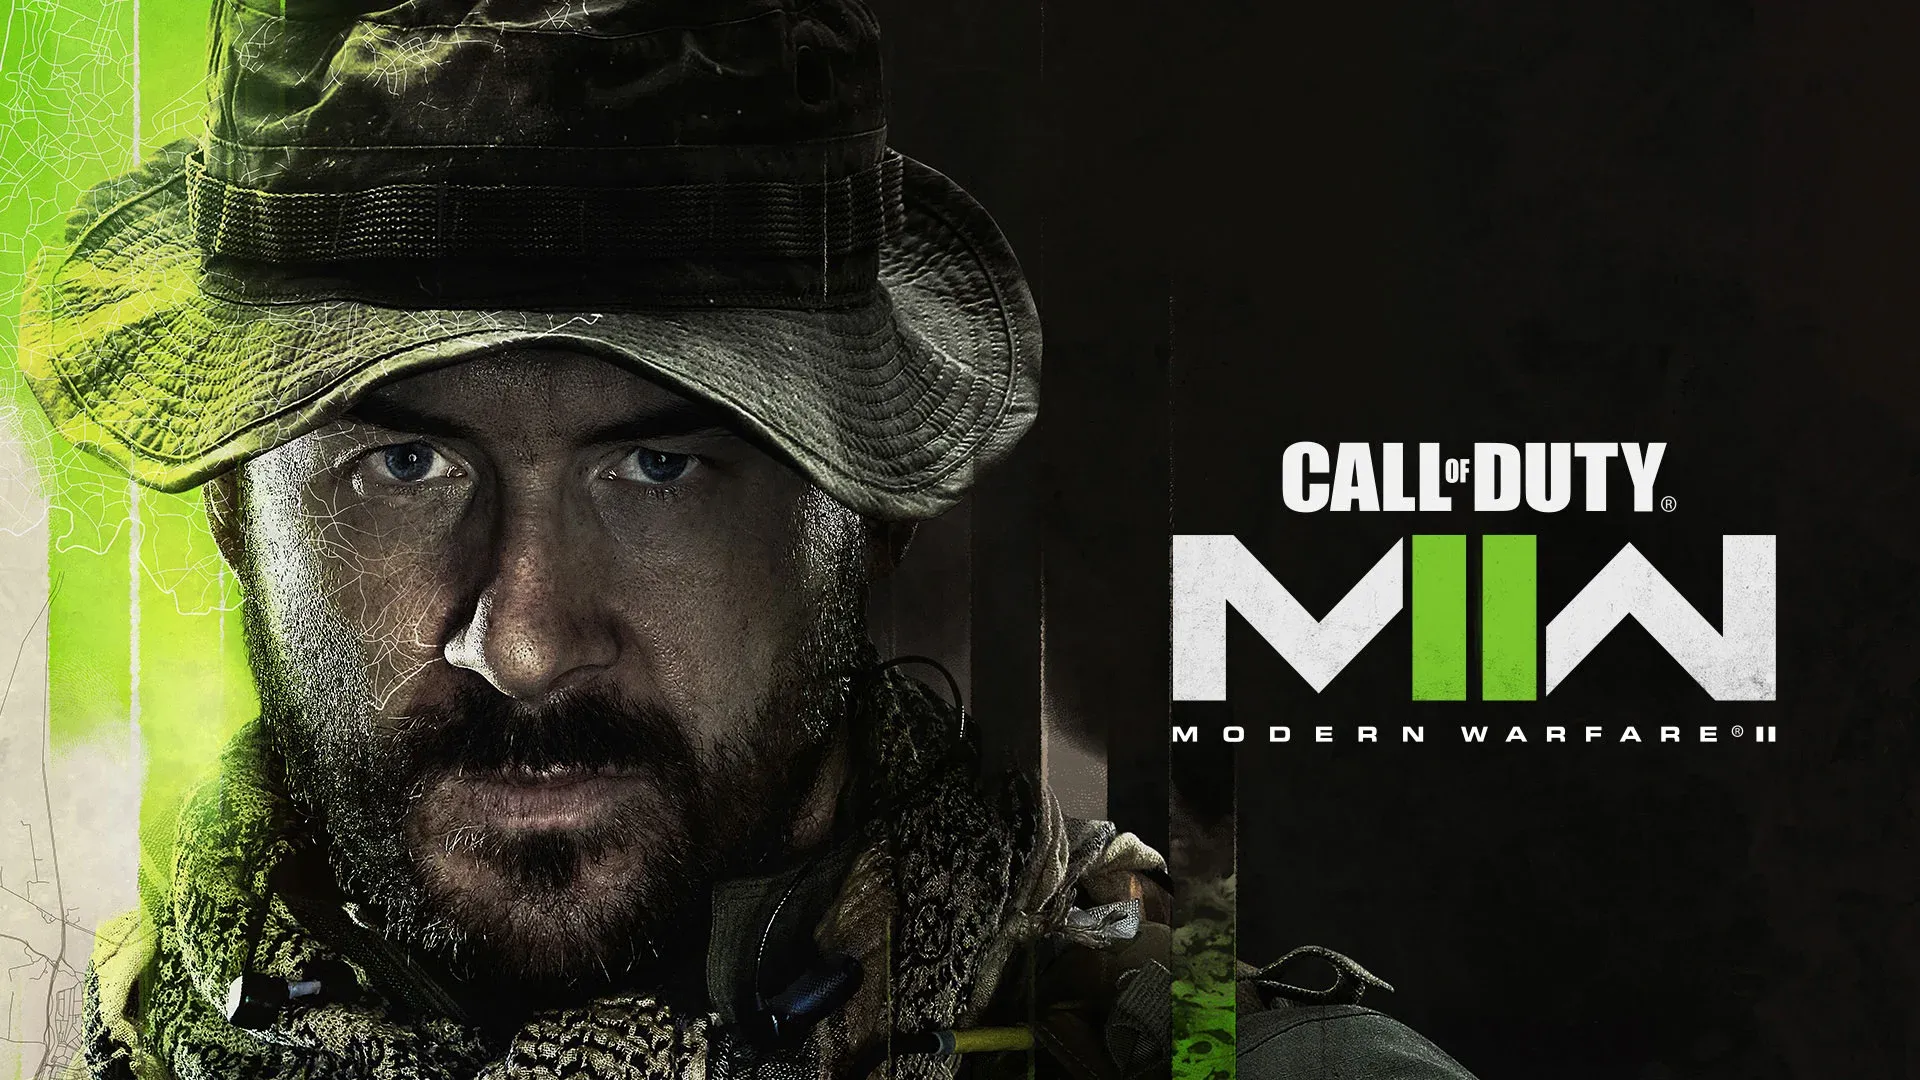 Requisitos de la beta de Call of Duty Modern Warfare 2019